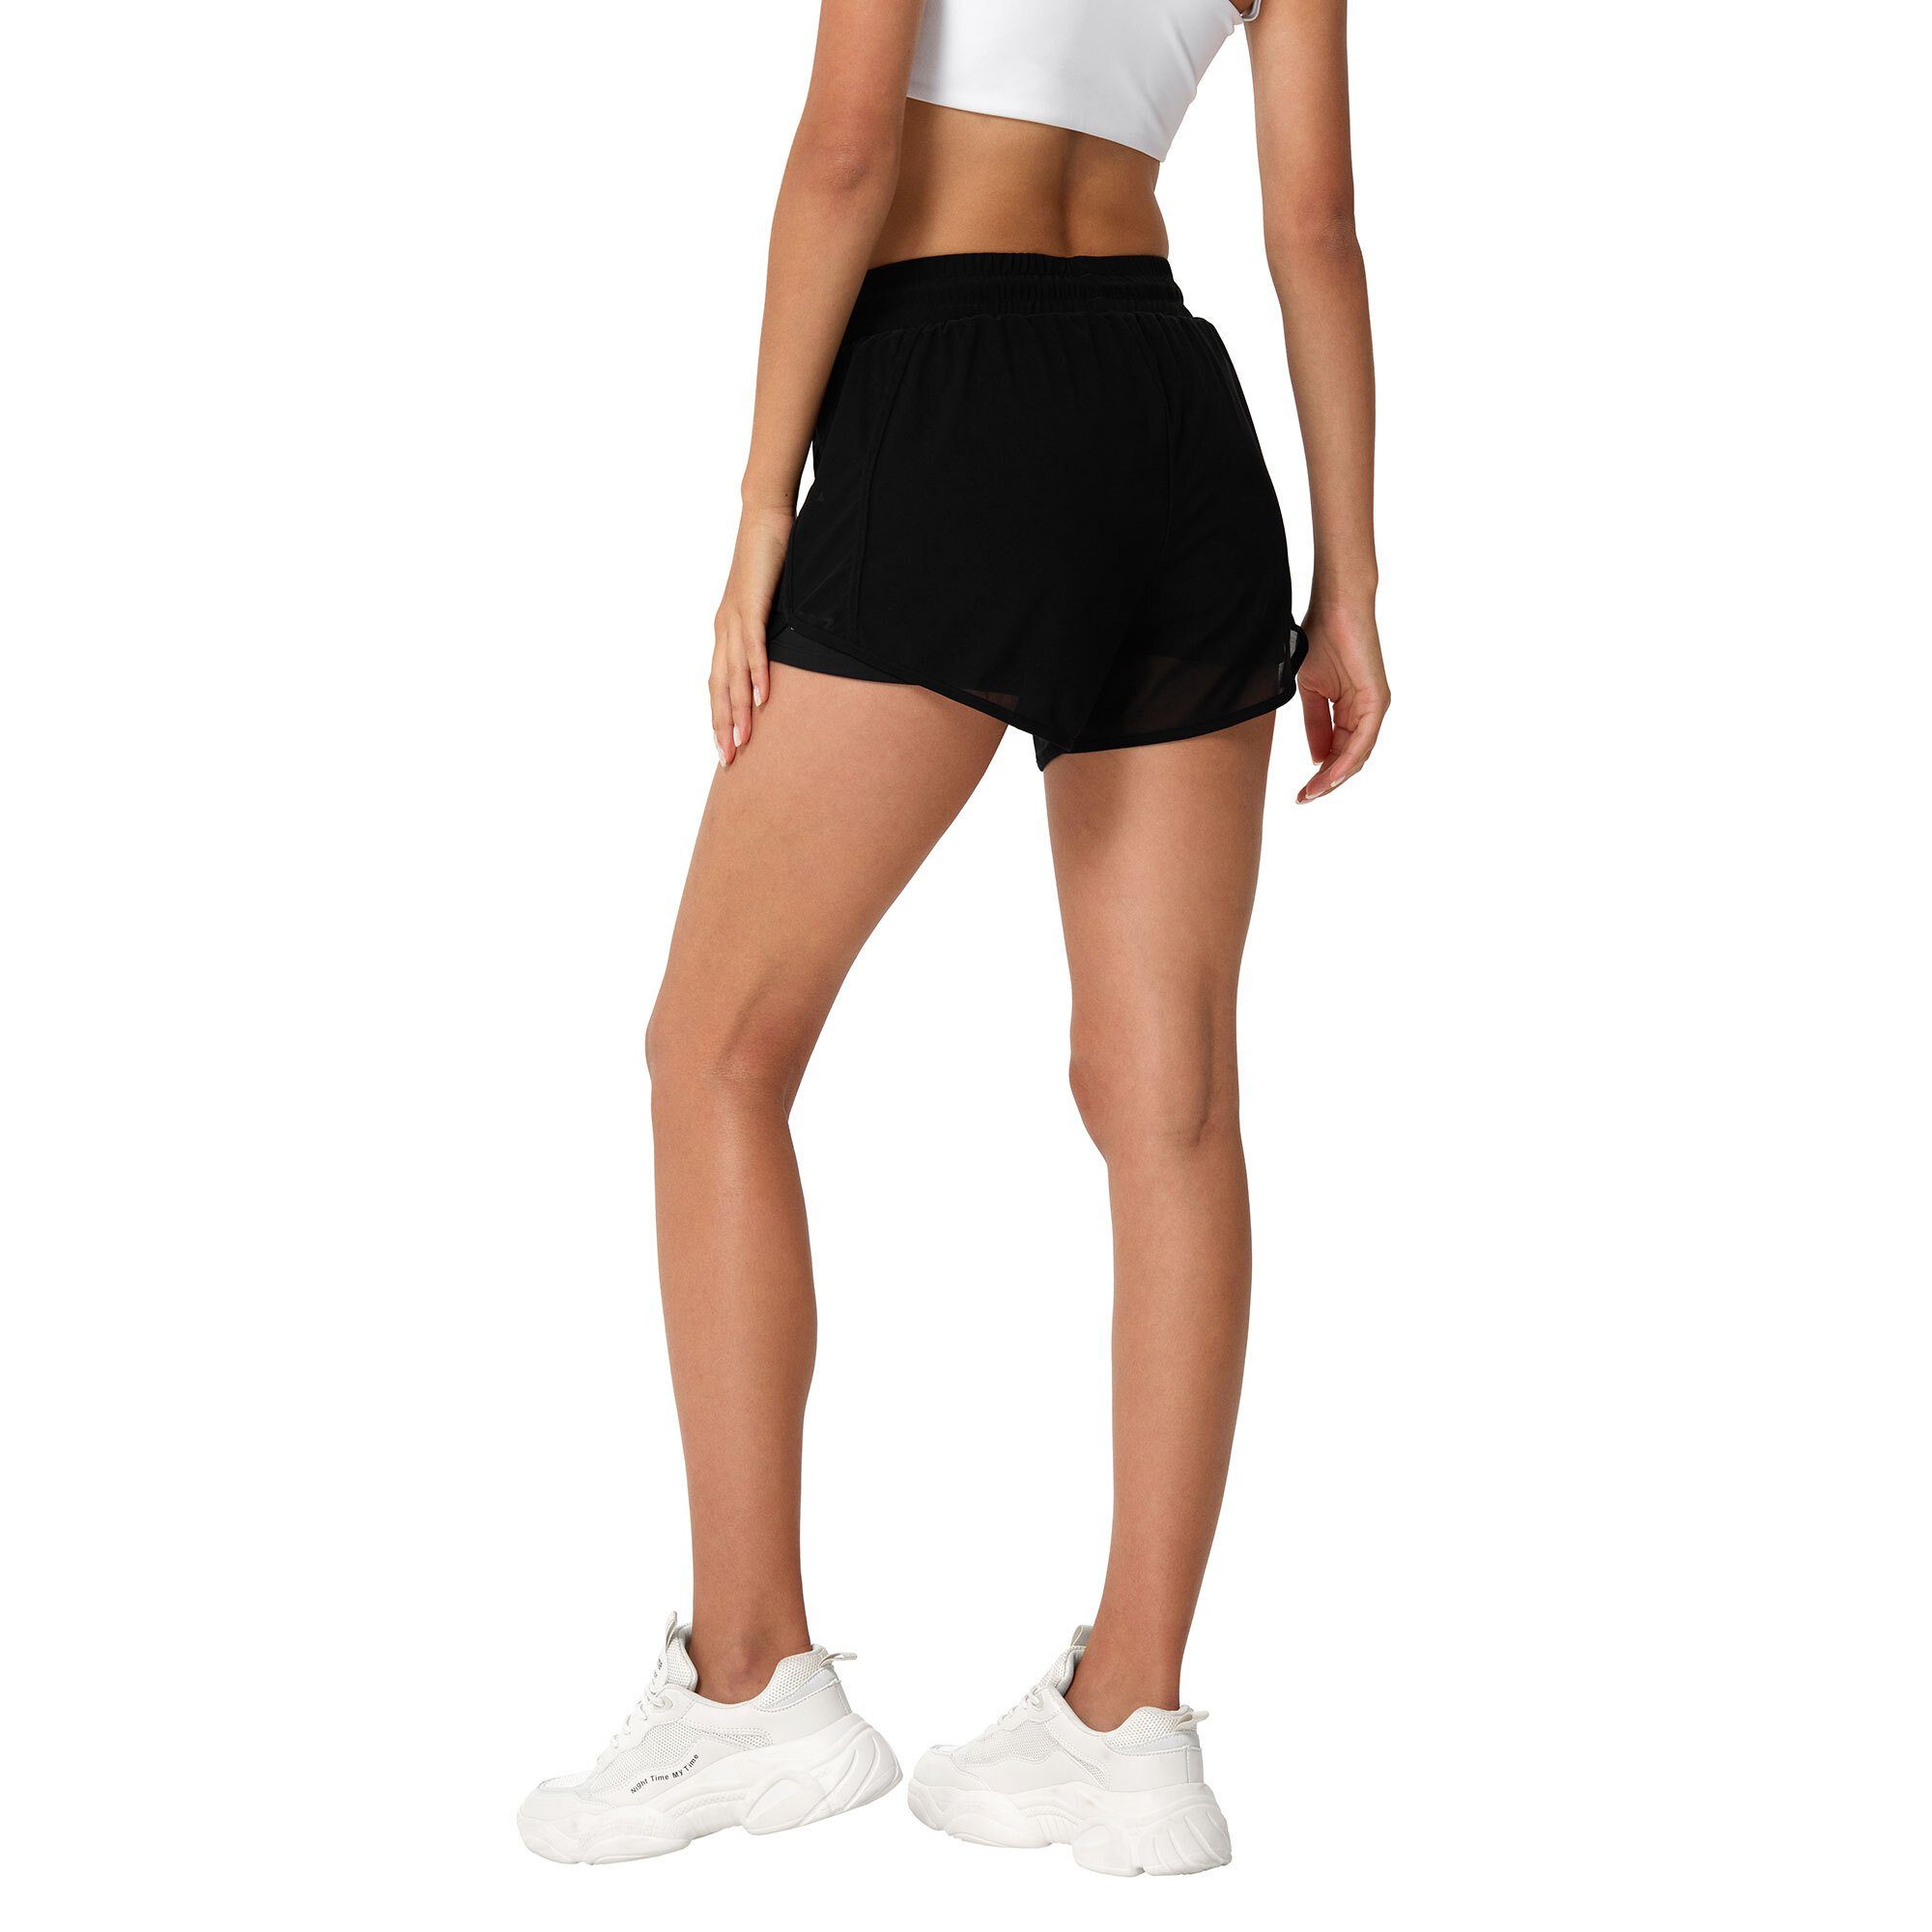 YEAZ Yogashorts SQUAT shorts (2-tlg) schwarz